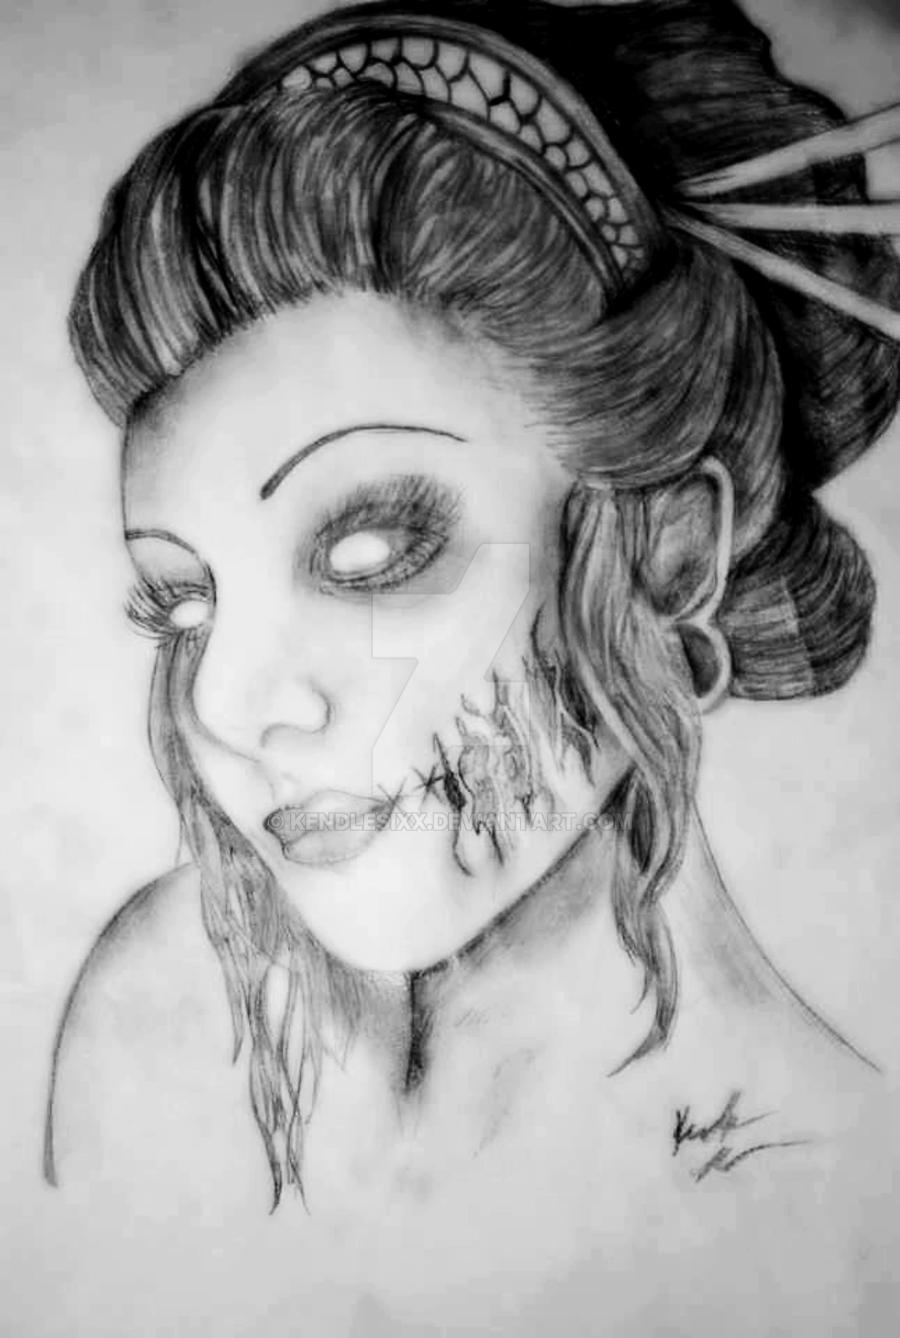 Zombie Beauty by KendleSixx on DeviantArt